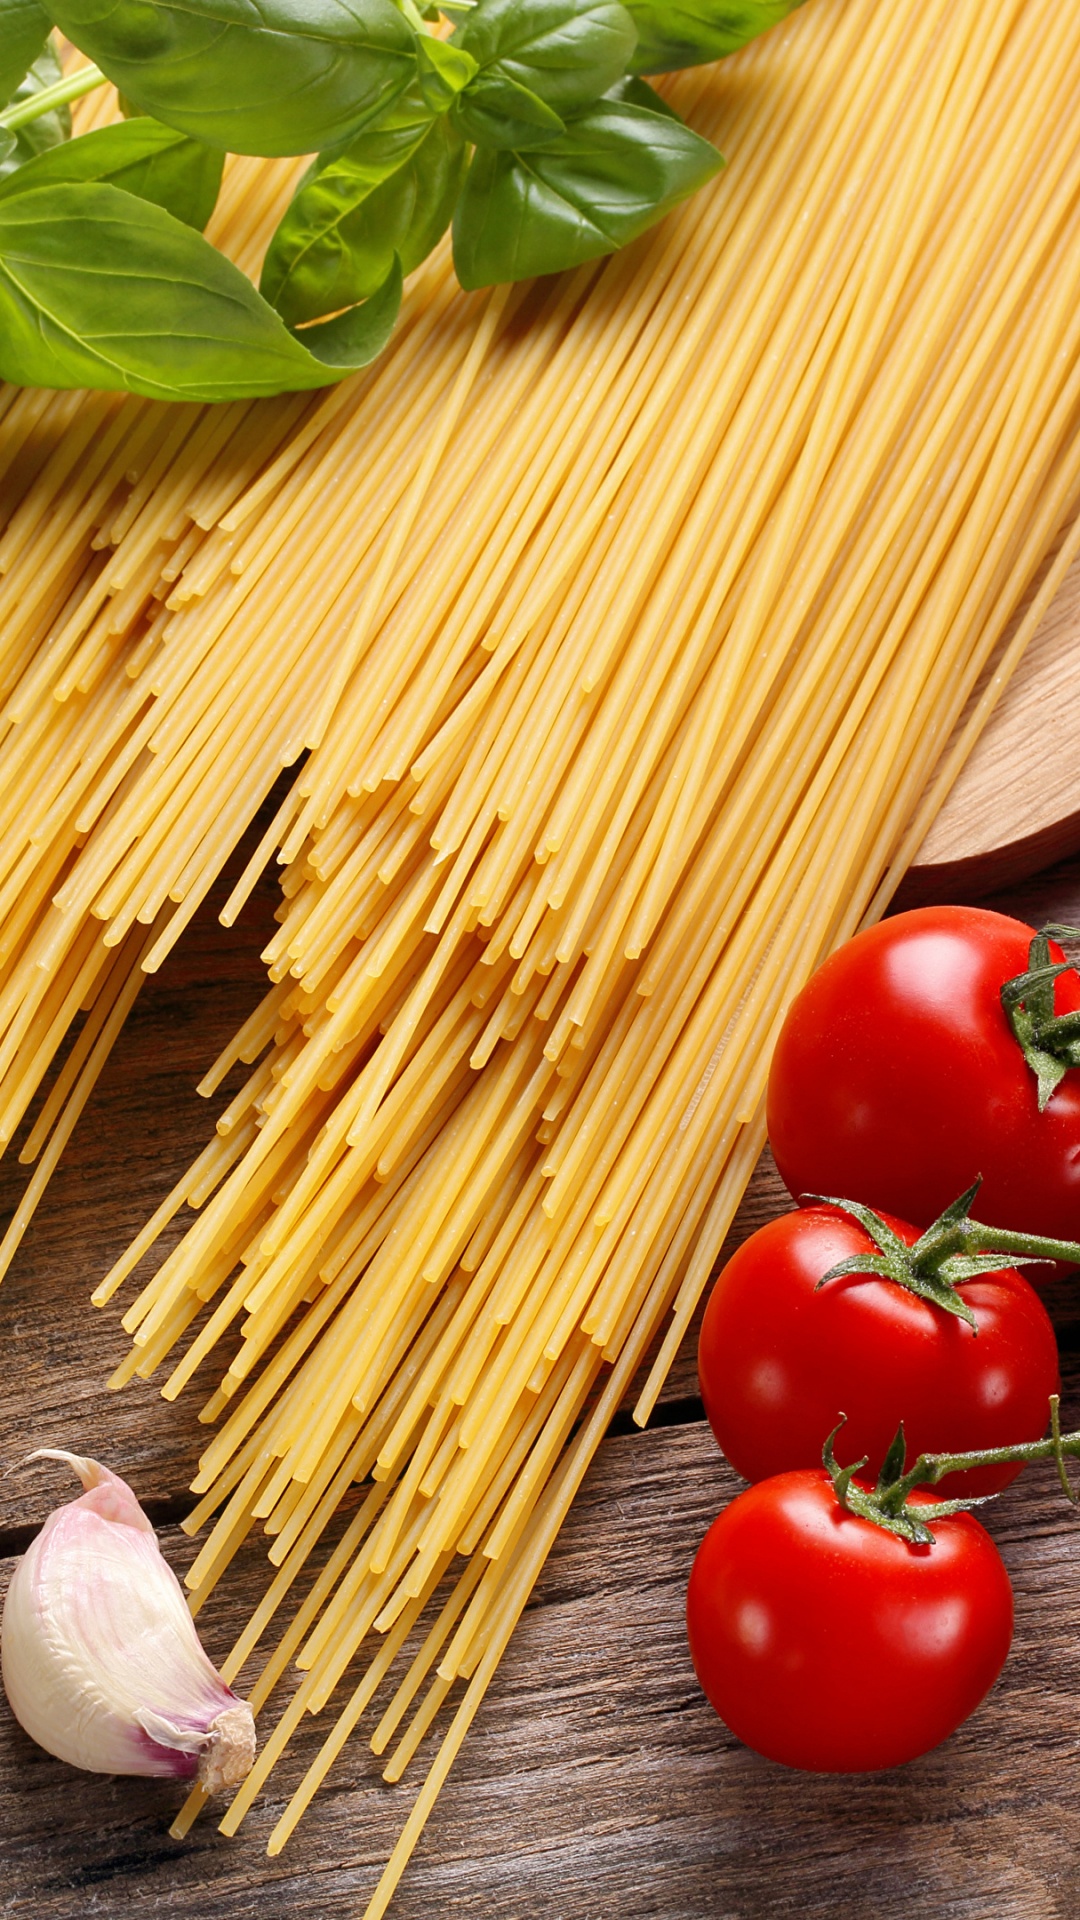 意大利菜, 天然的食物, 食品, 成分, 产生 壁纸 1080x1920 允许